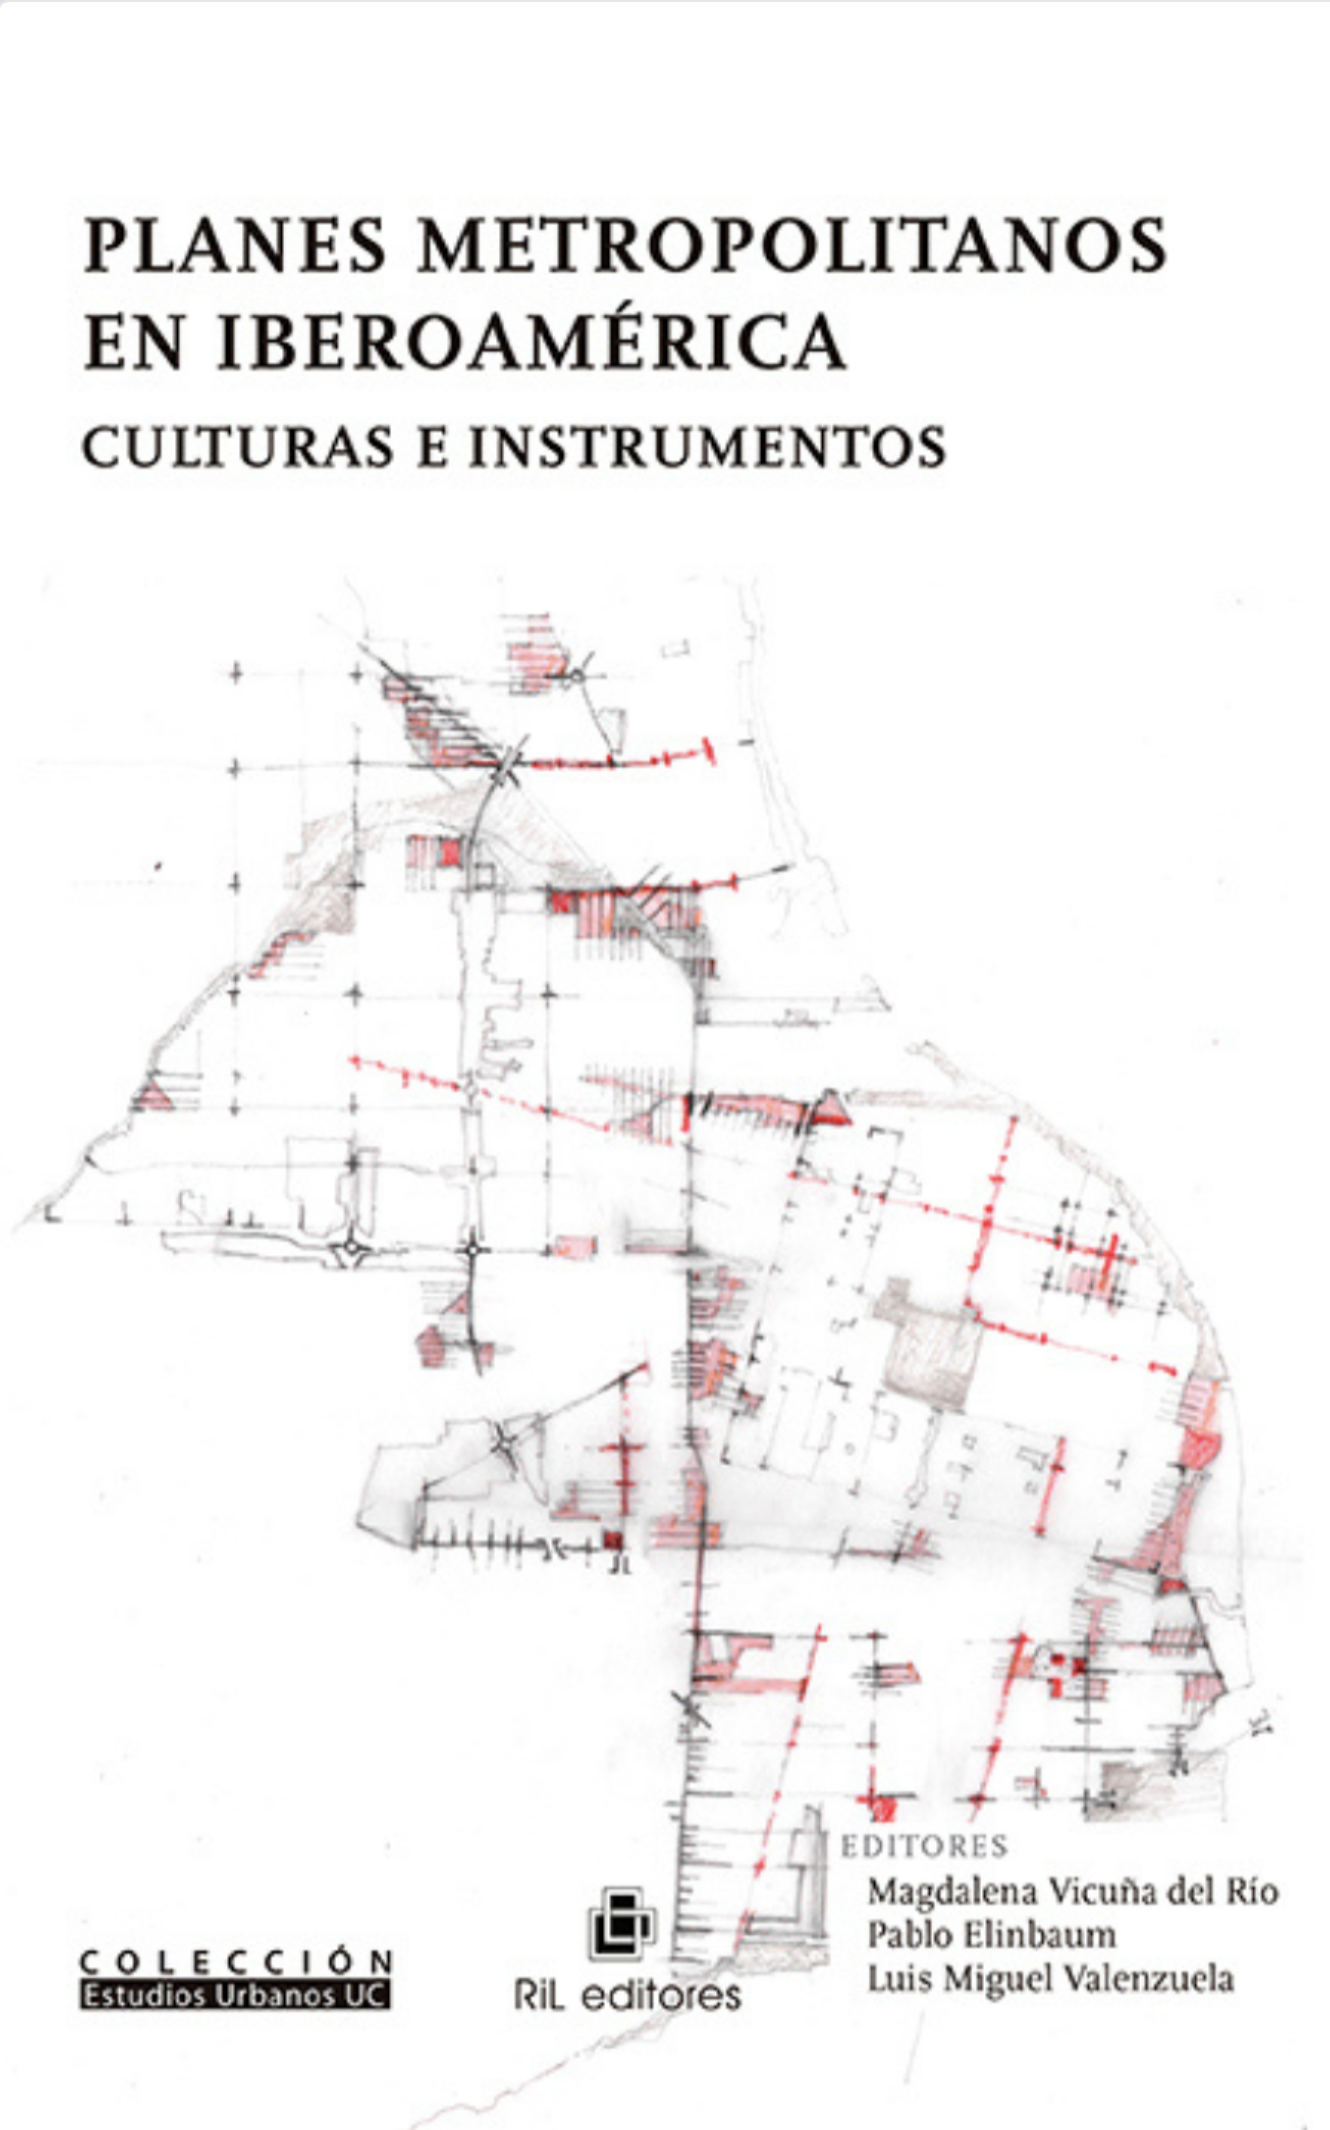 Planes Metropolitanos en Iberoamérica: Culturas e Instrumentos